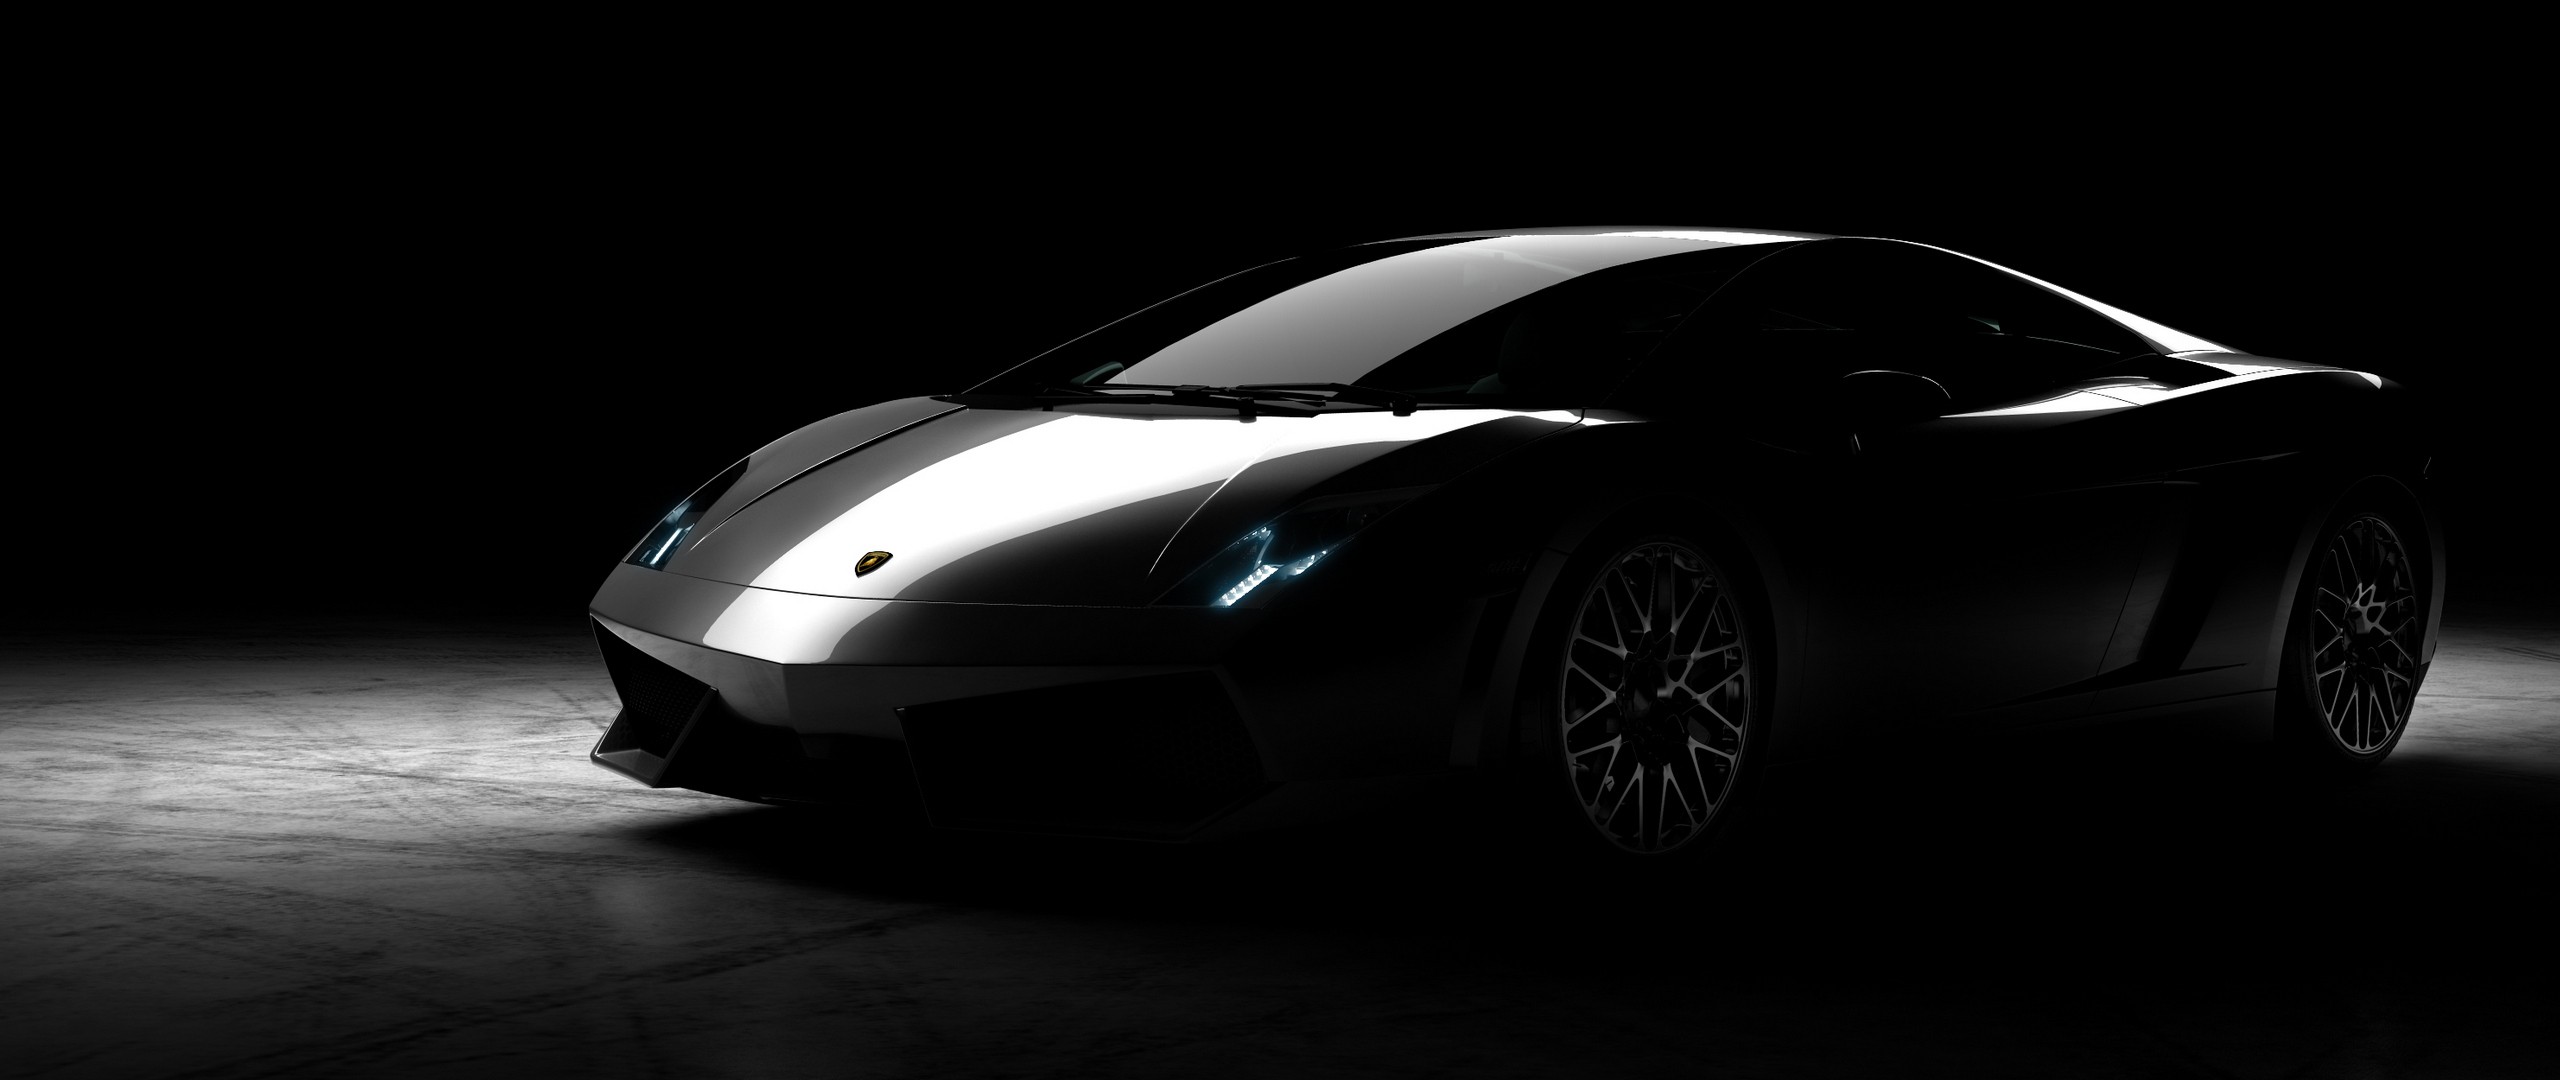 Lamborghini Gallardo LP560 4 Spotlights Car 2560x1080